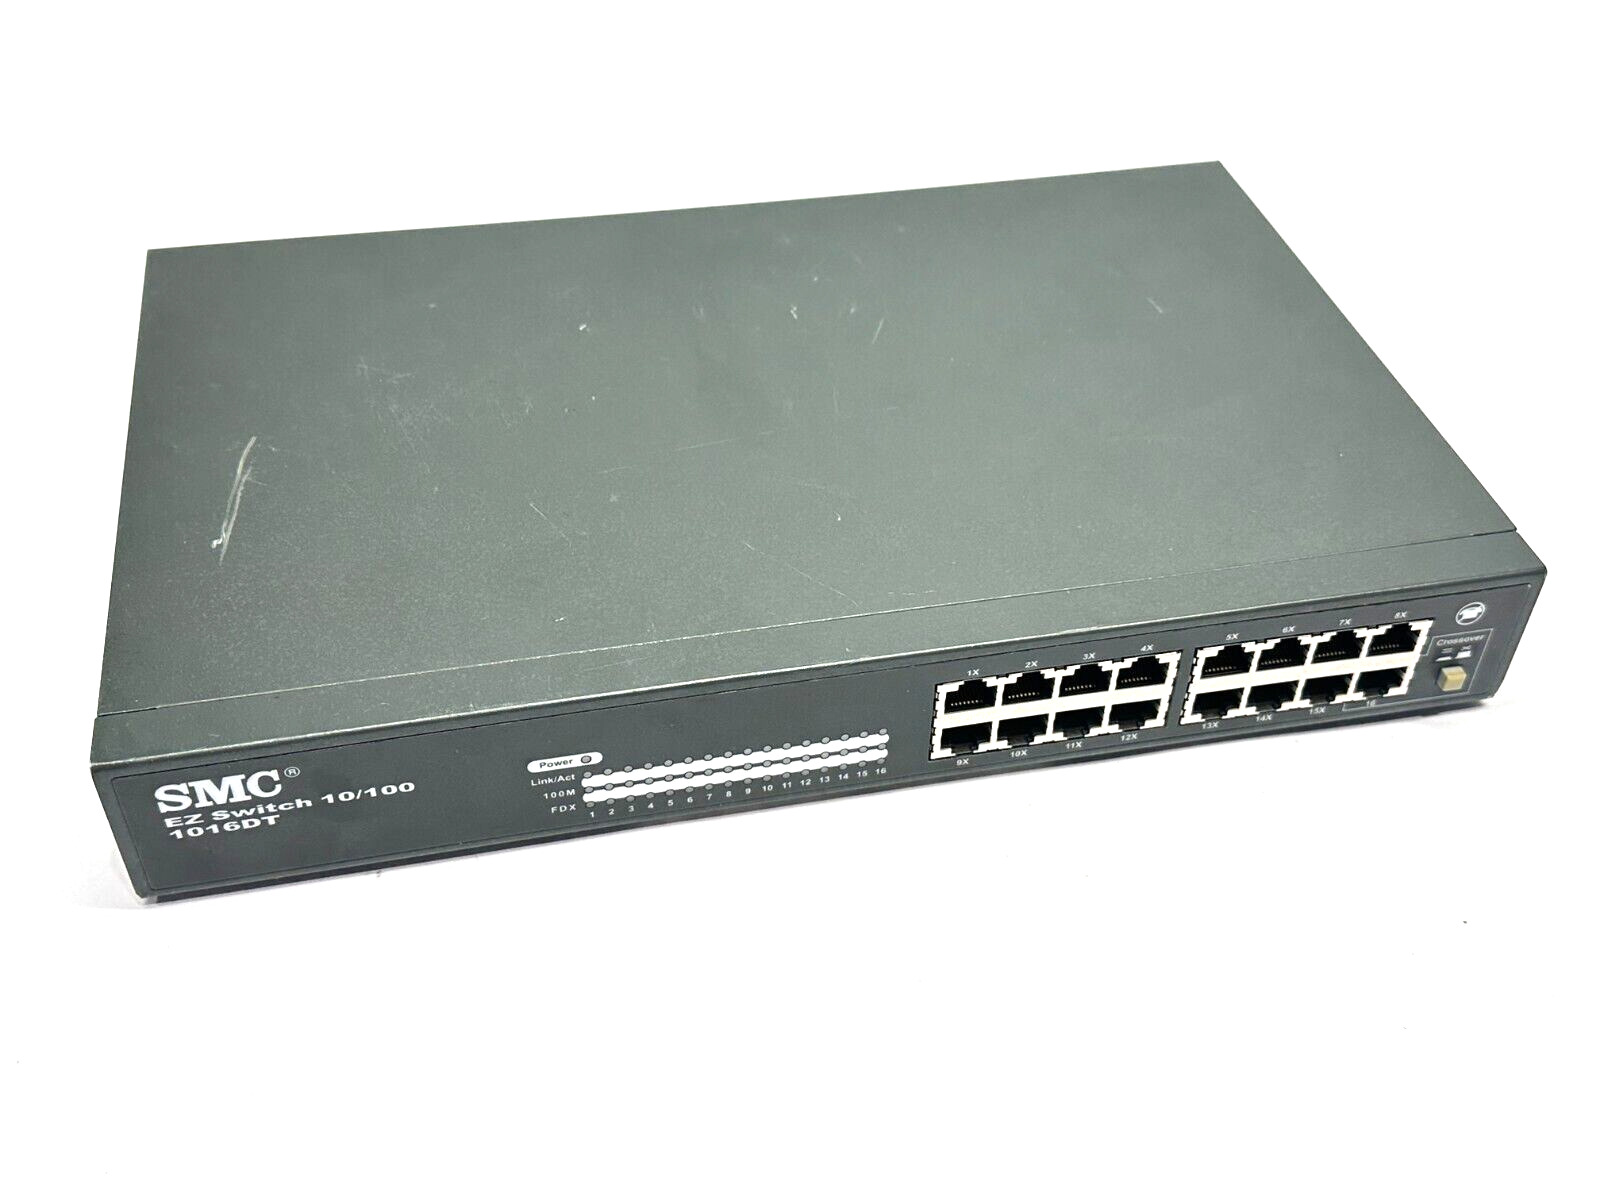 SMC EZNET-16SW EZ Switch 10/100 Network Switch 1016DT